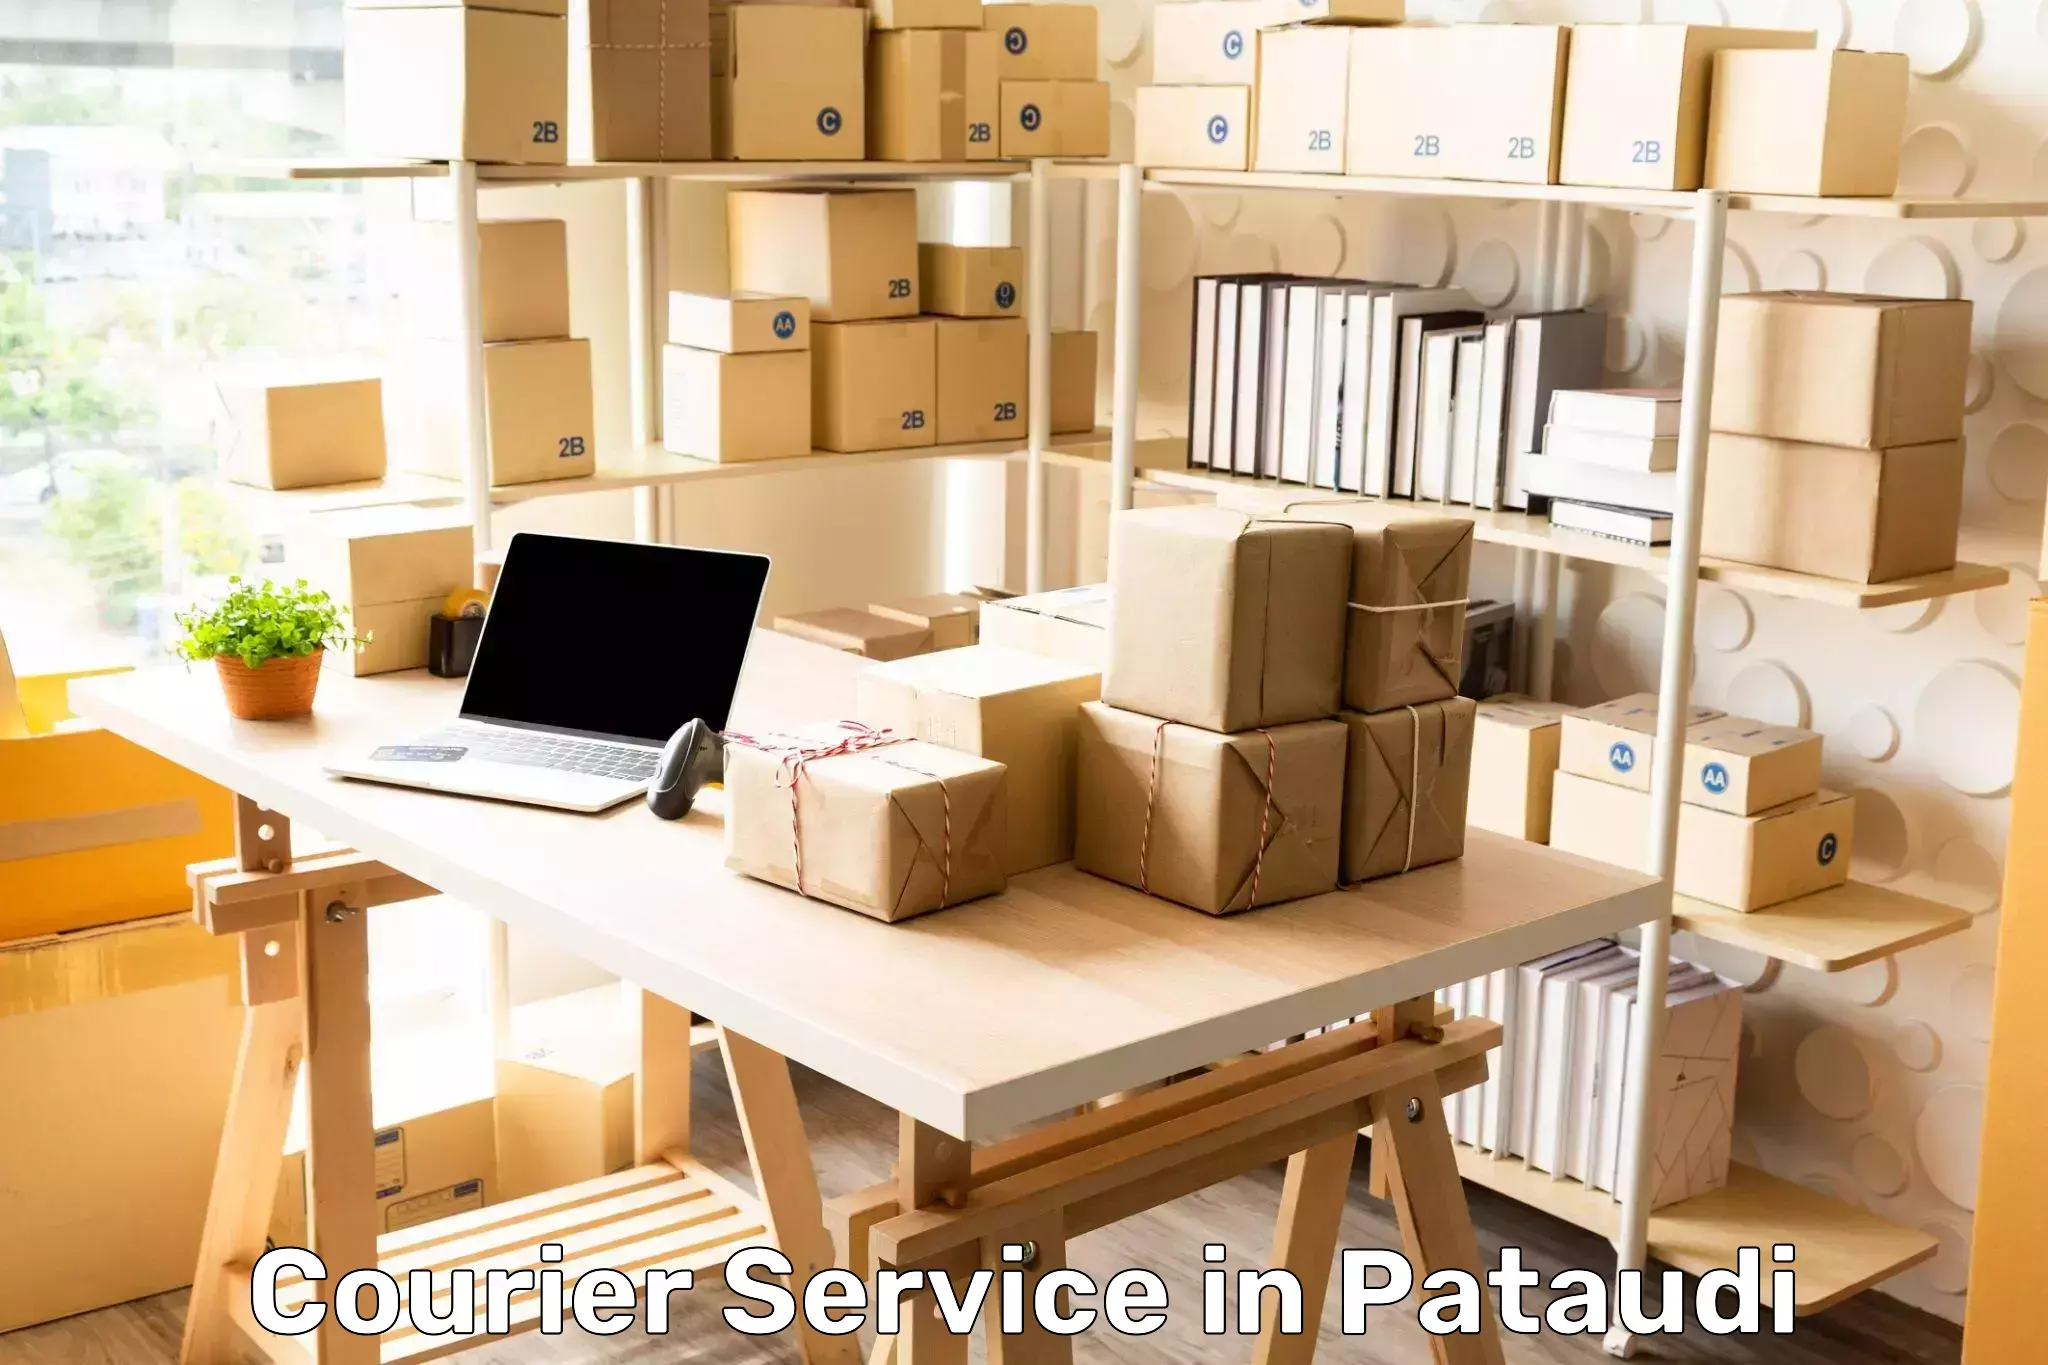 Efficient logistics management in Pataudi